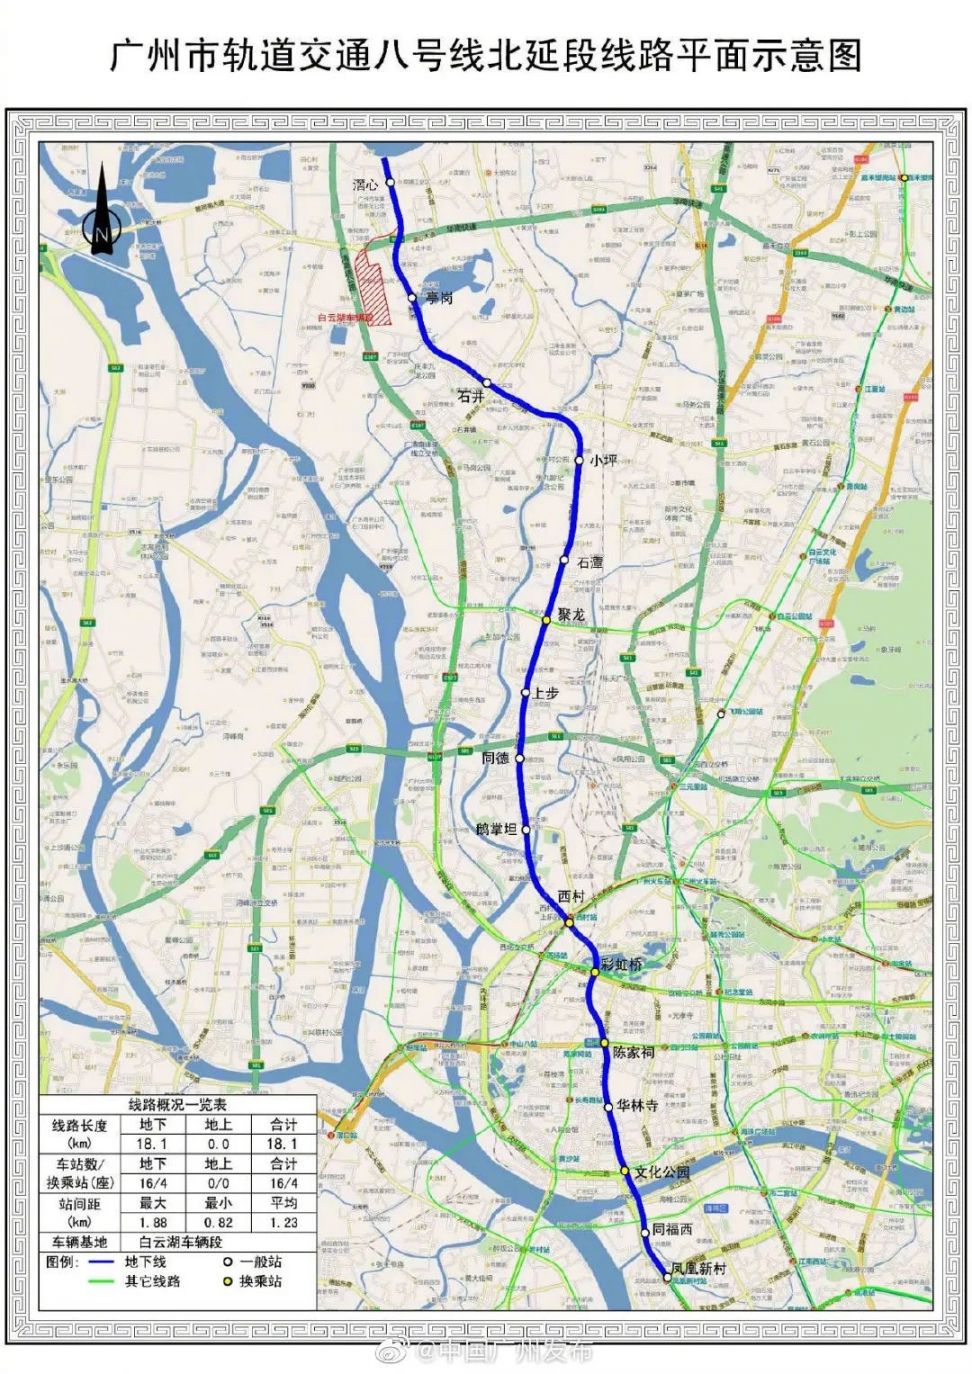 2020广州地铁八号线北延段全线电通 力争在年内开通